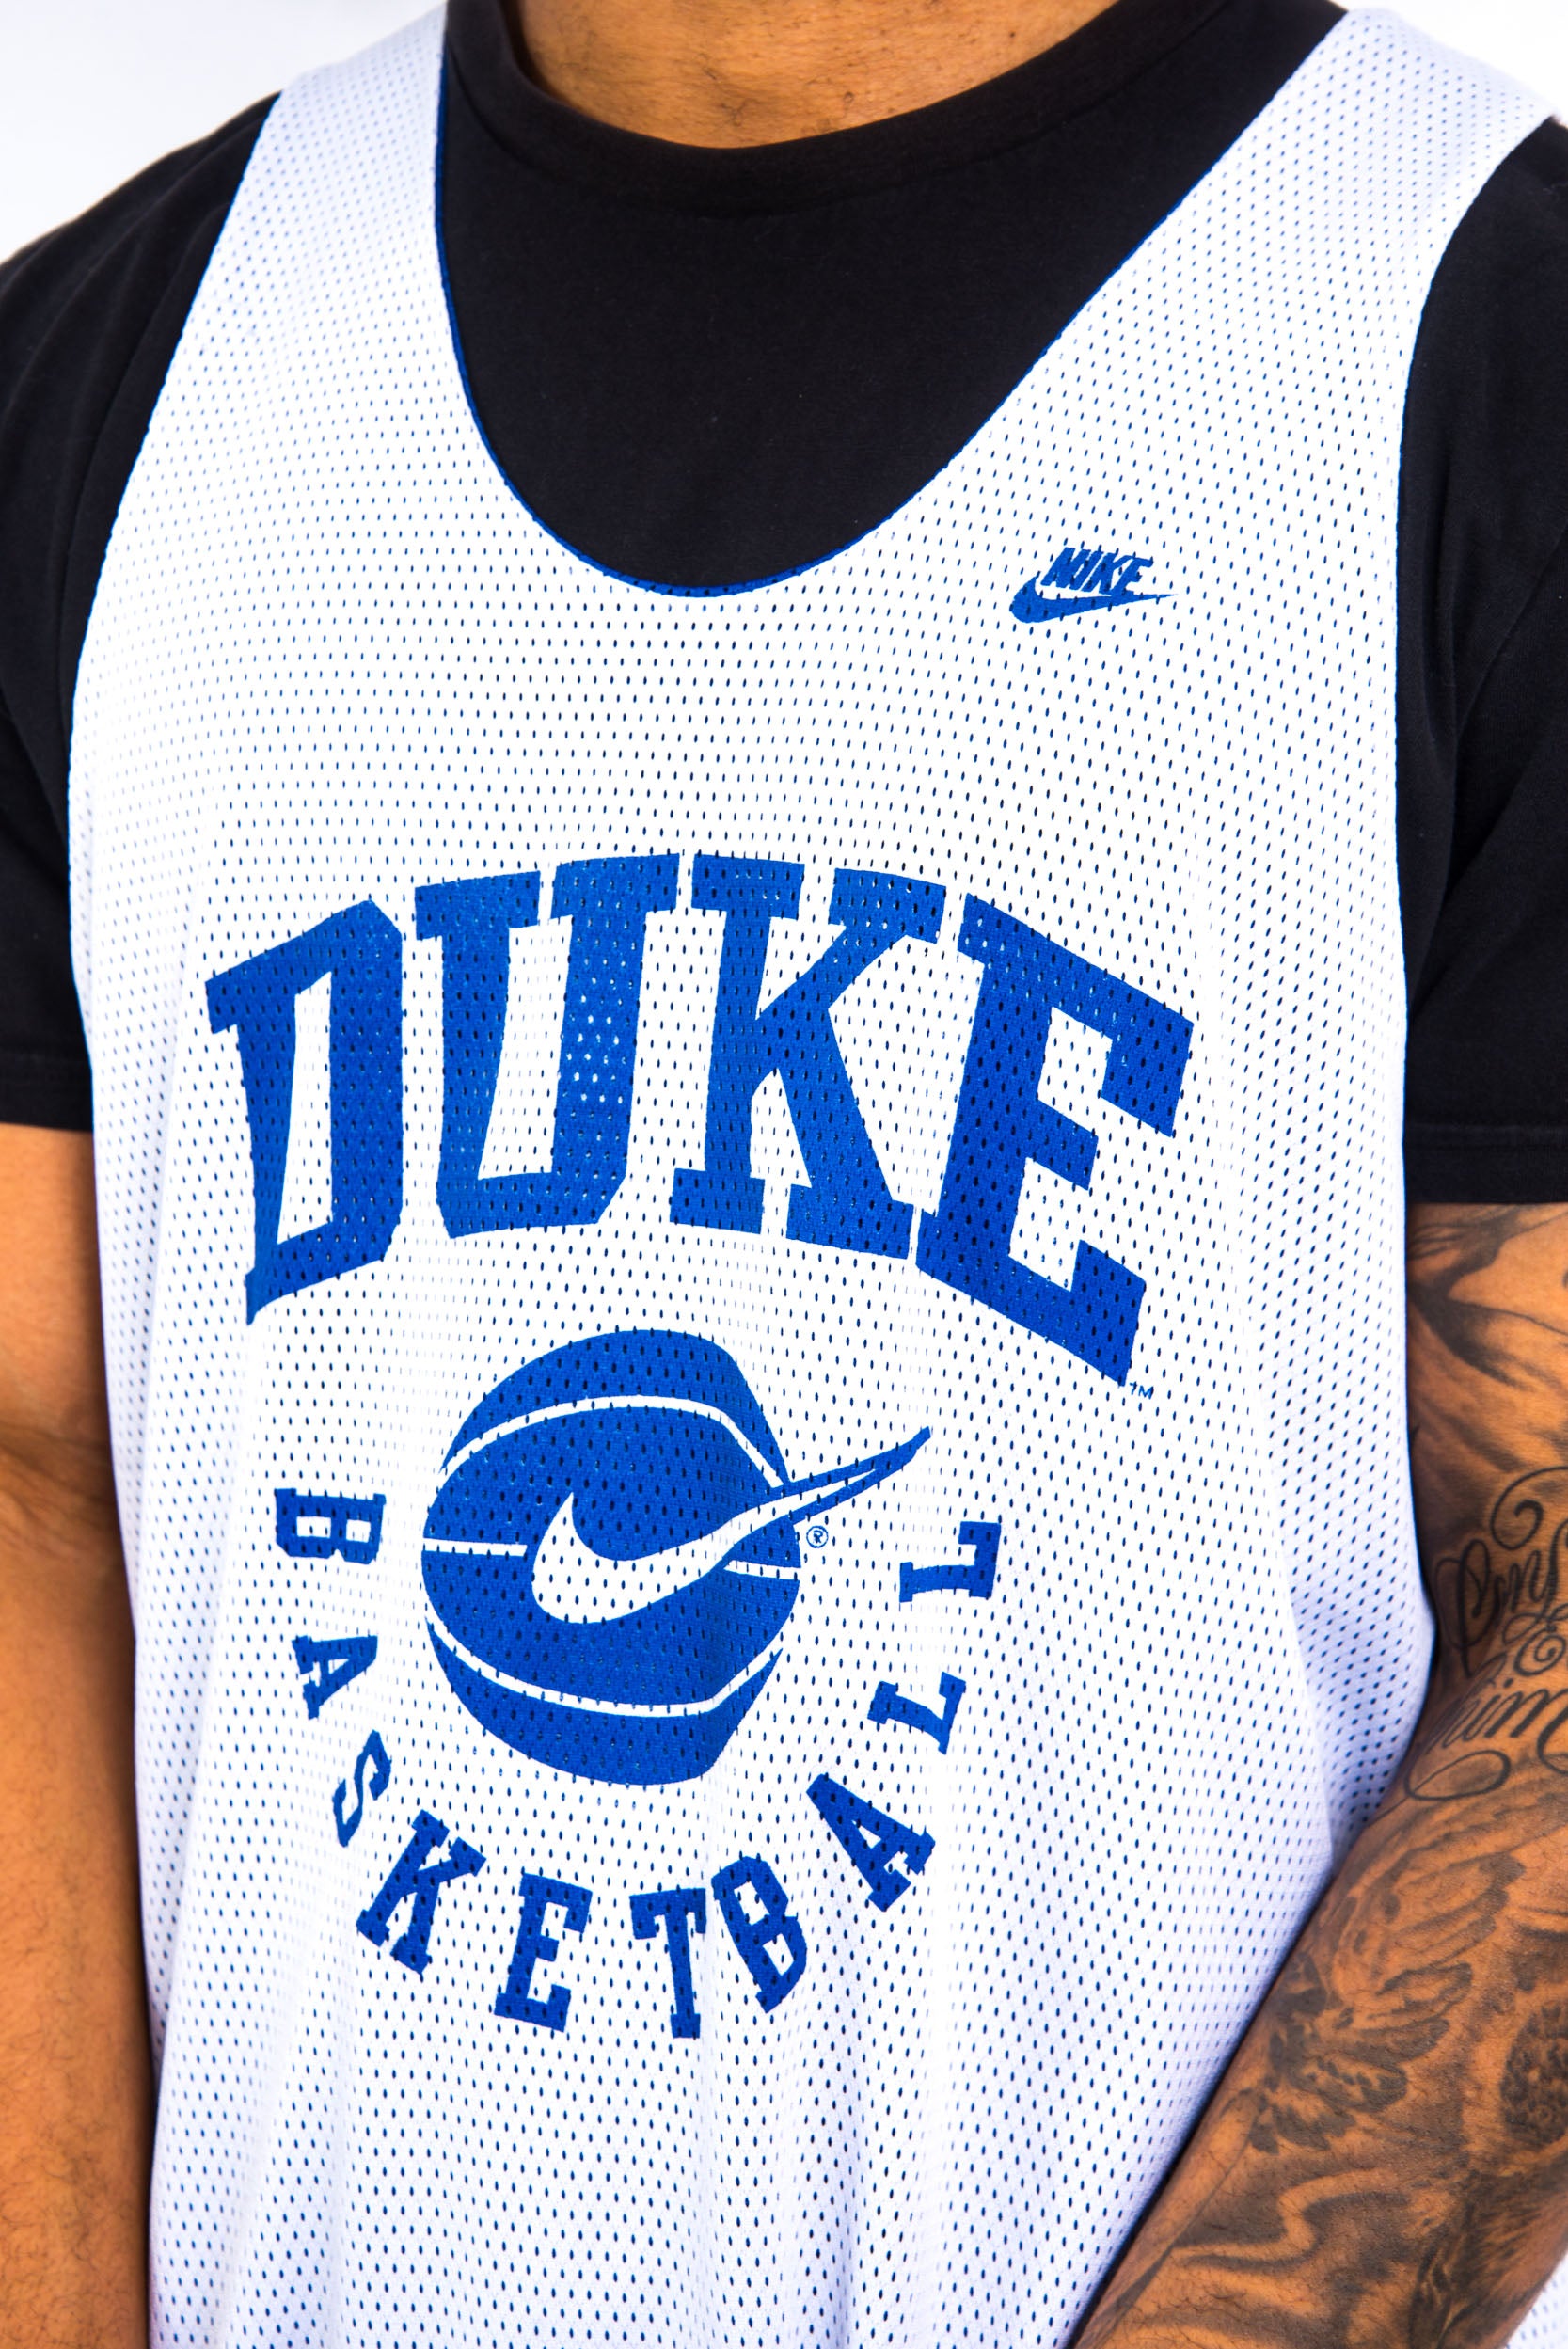 Nike Duke Blue Devils Basketball Reversible Jersey Men's Medium #00  Blue AV2128